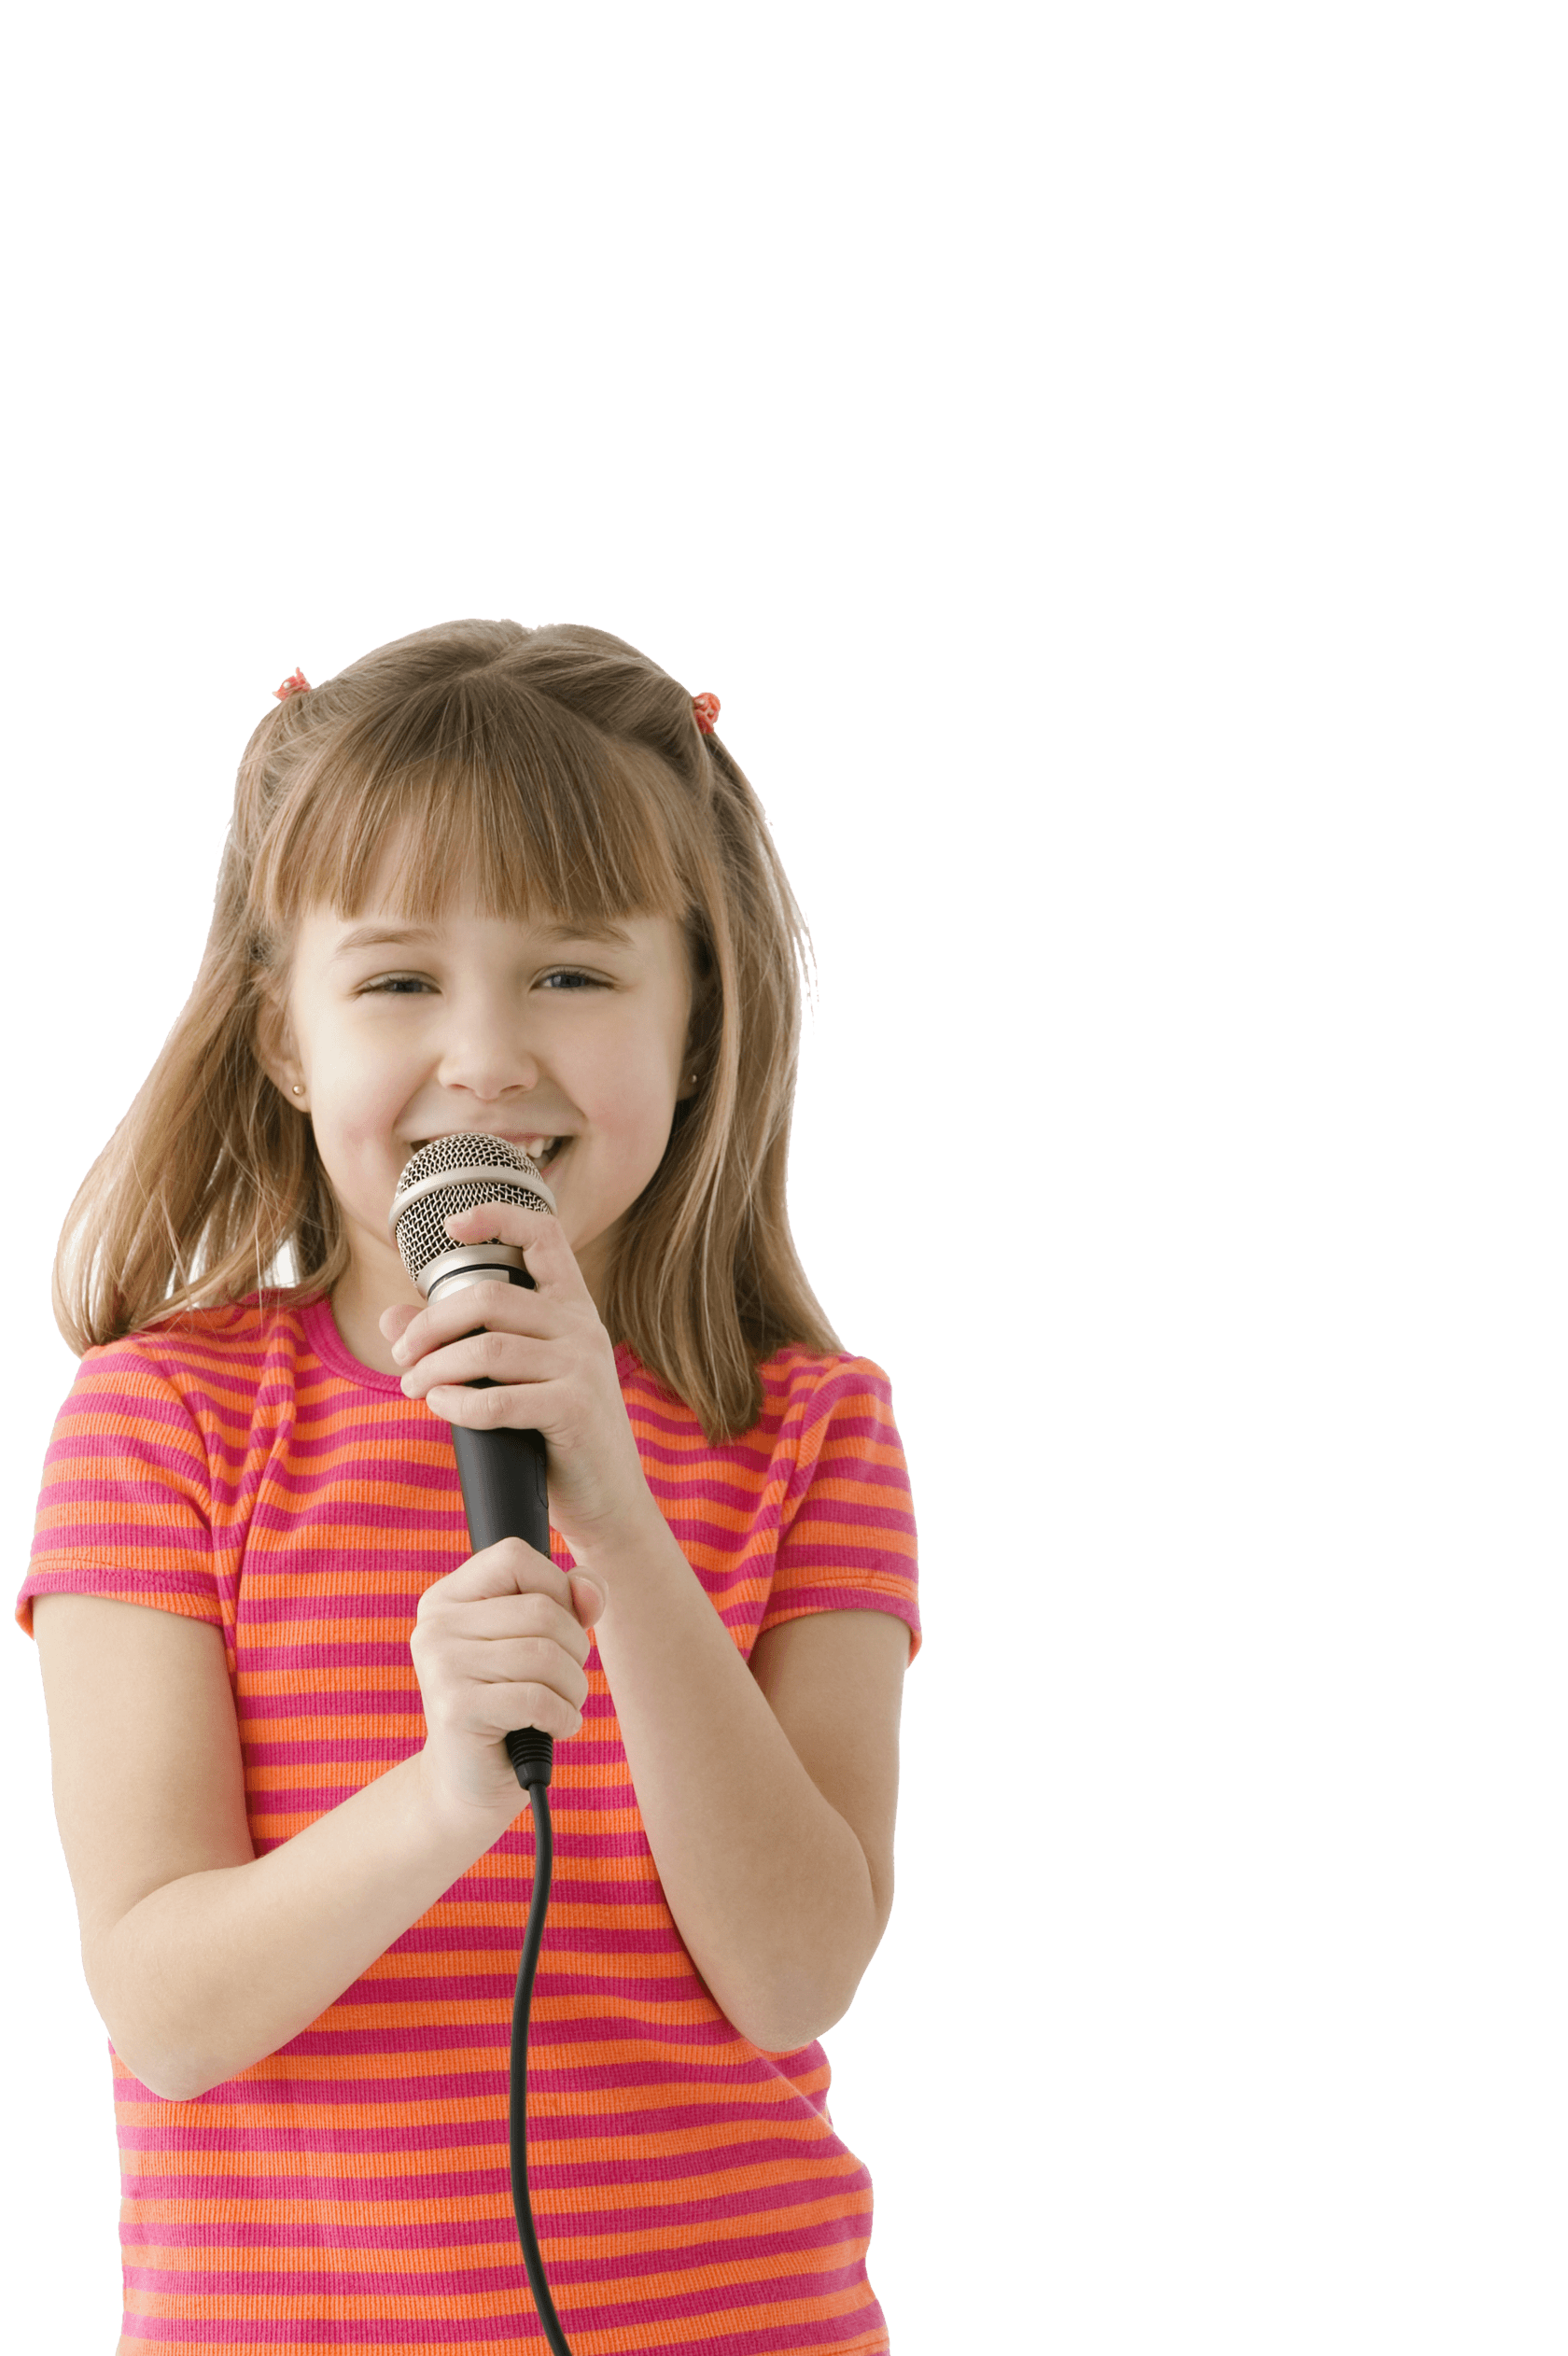 Без микрофона пой. Вокал дети. Дети поют. Девочка поет. Девочка с микрофоном.